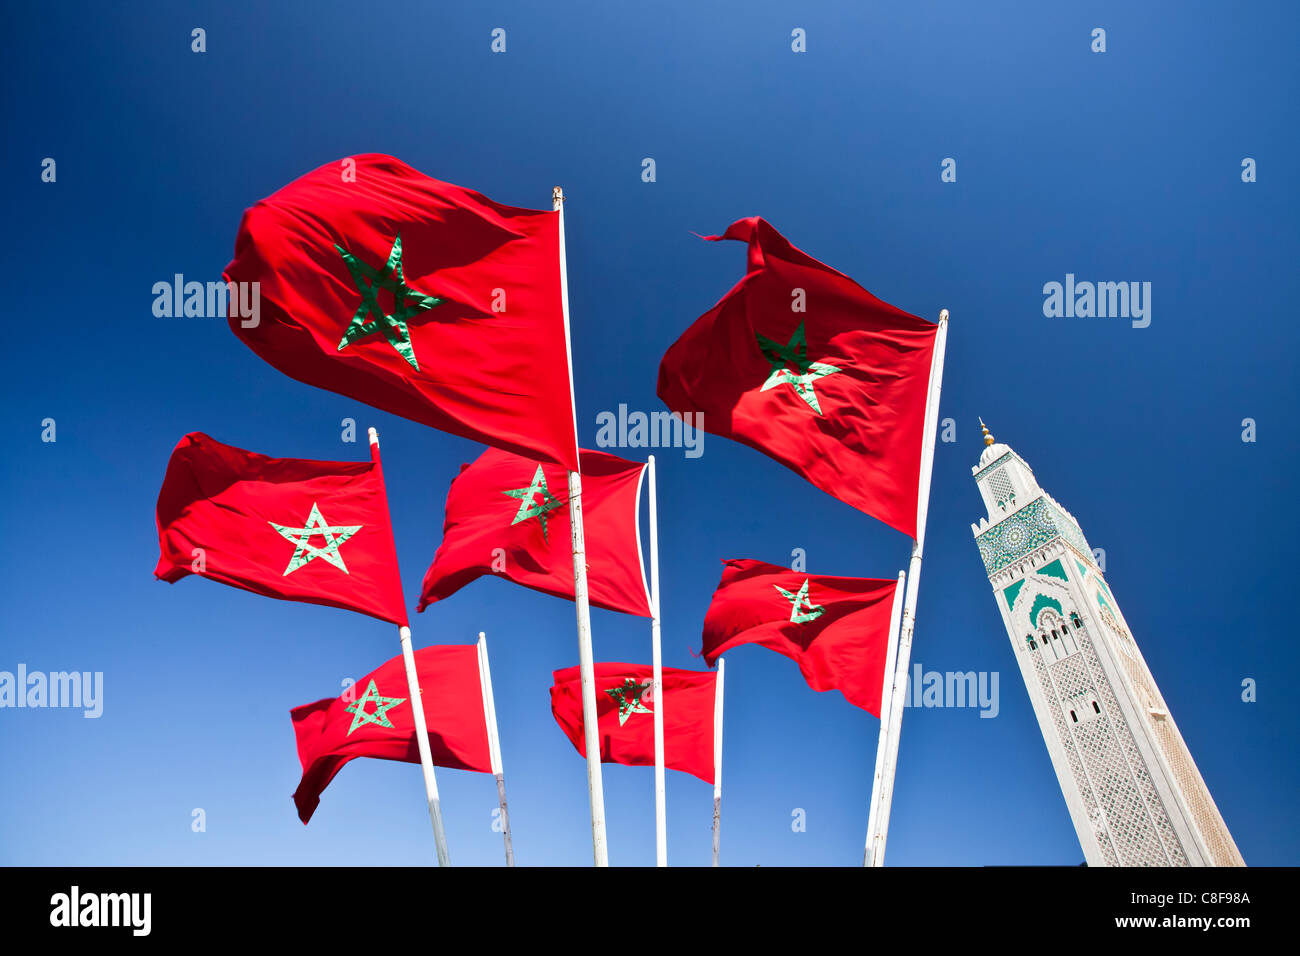 Le Maroc, l'Afrique du Nord, d'Afrique, Casablanca, Hassan II, mosquée, plus haut, haut, minaret, 210 ms, Maroc, Afrique du Nord, d'Afrique, d'un drapeau Banque D'Images